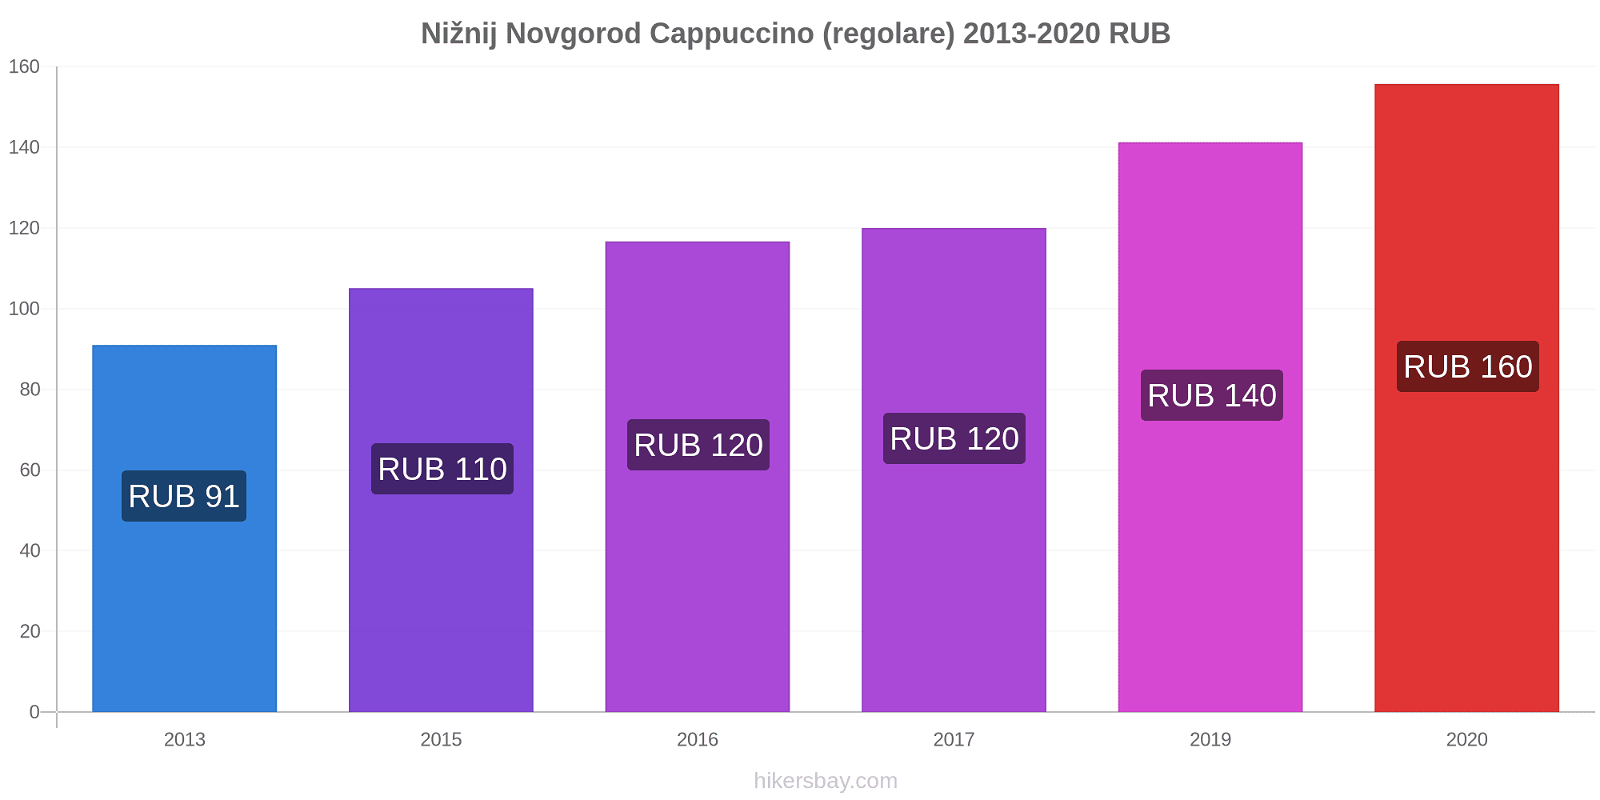 Nižnij Novgorod variazioni di prezzo Cappuccino (normale) hikersbay.com